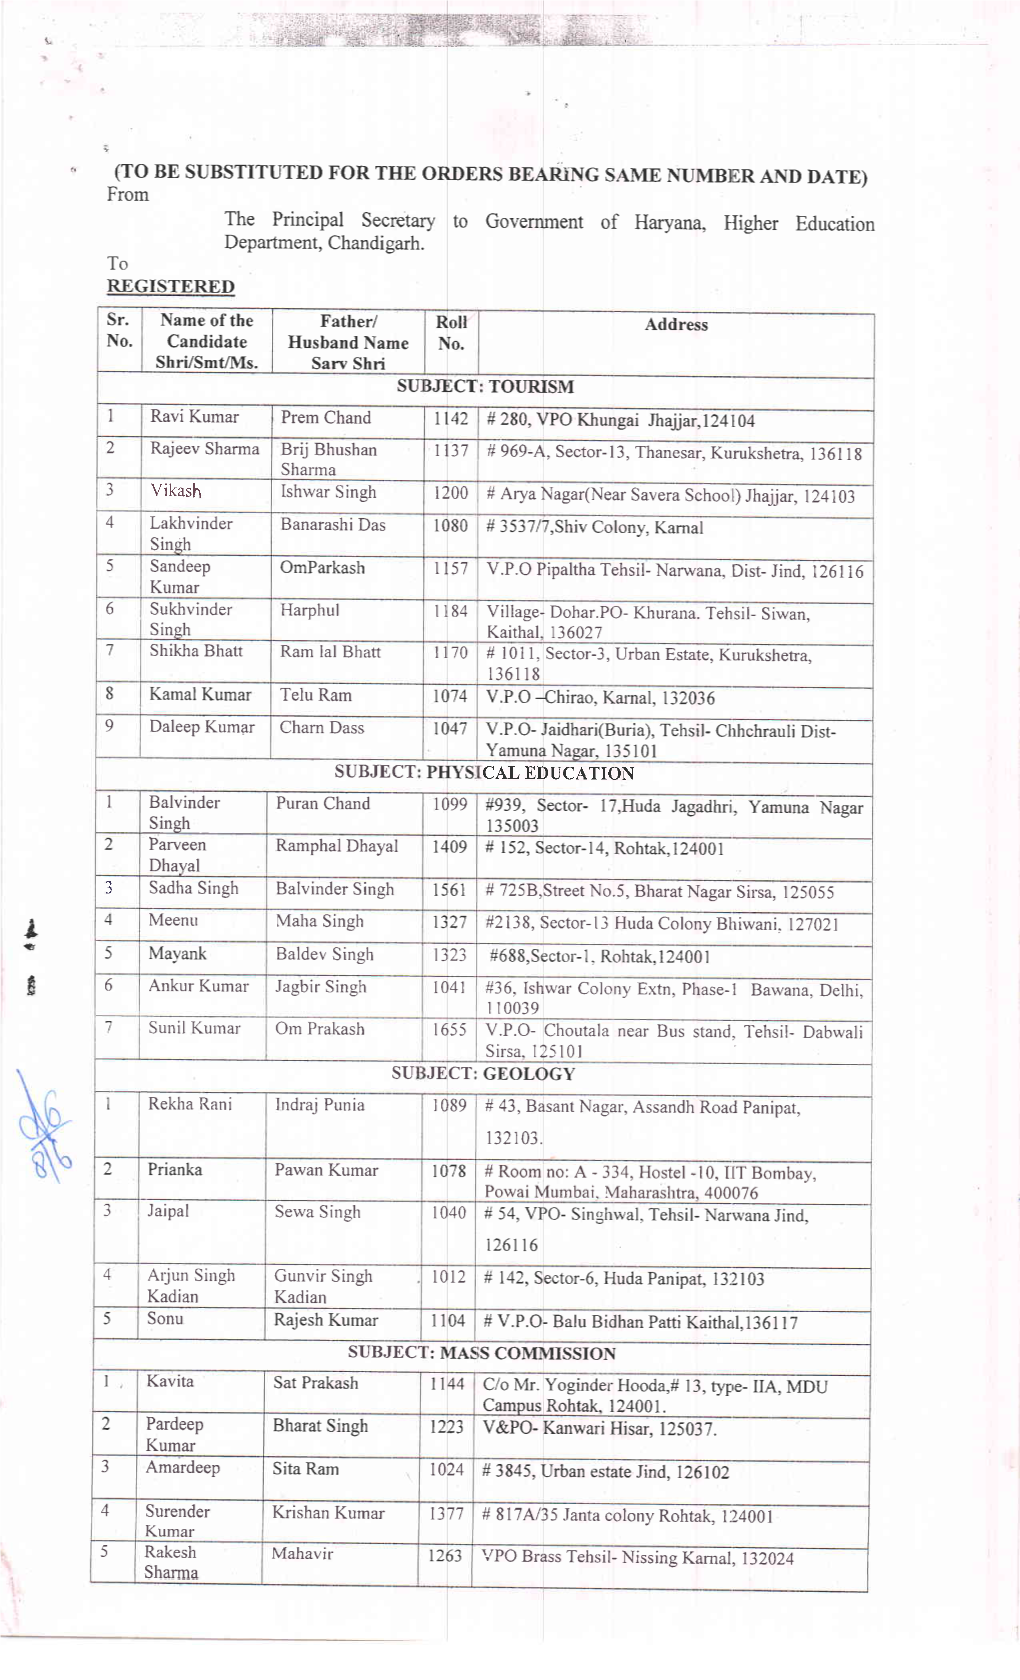 1074 V,P.O {Hirao, Kamal, 132036 9 Daleep Kumar Charn Dass 1047 V.P.O- Jaidhari(Buria), Tehsil- Chhchrauli Dist- Yamuna Nagar, 135101 SUBJECT PHYS CAL EDUCATION